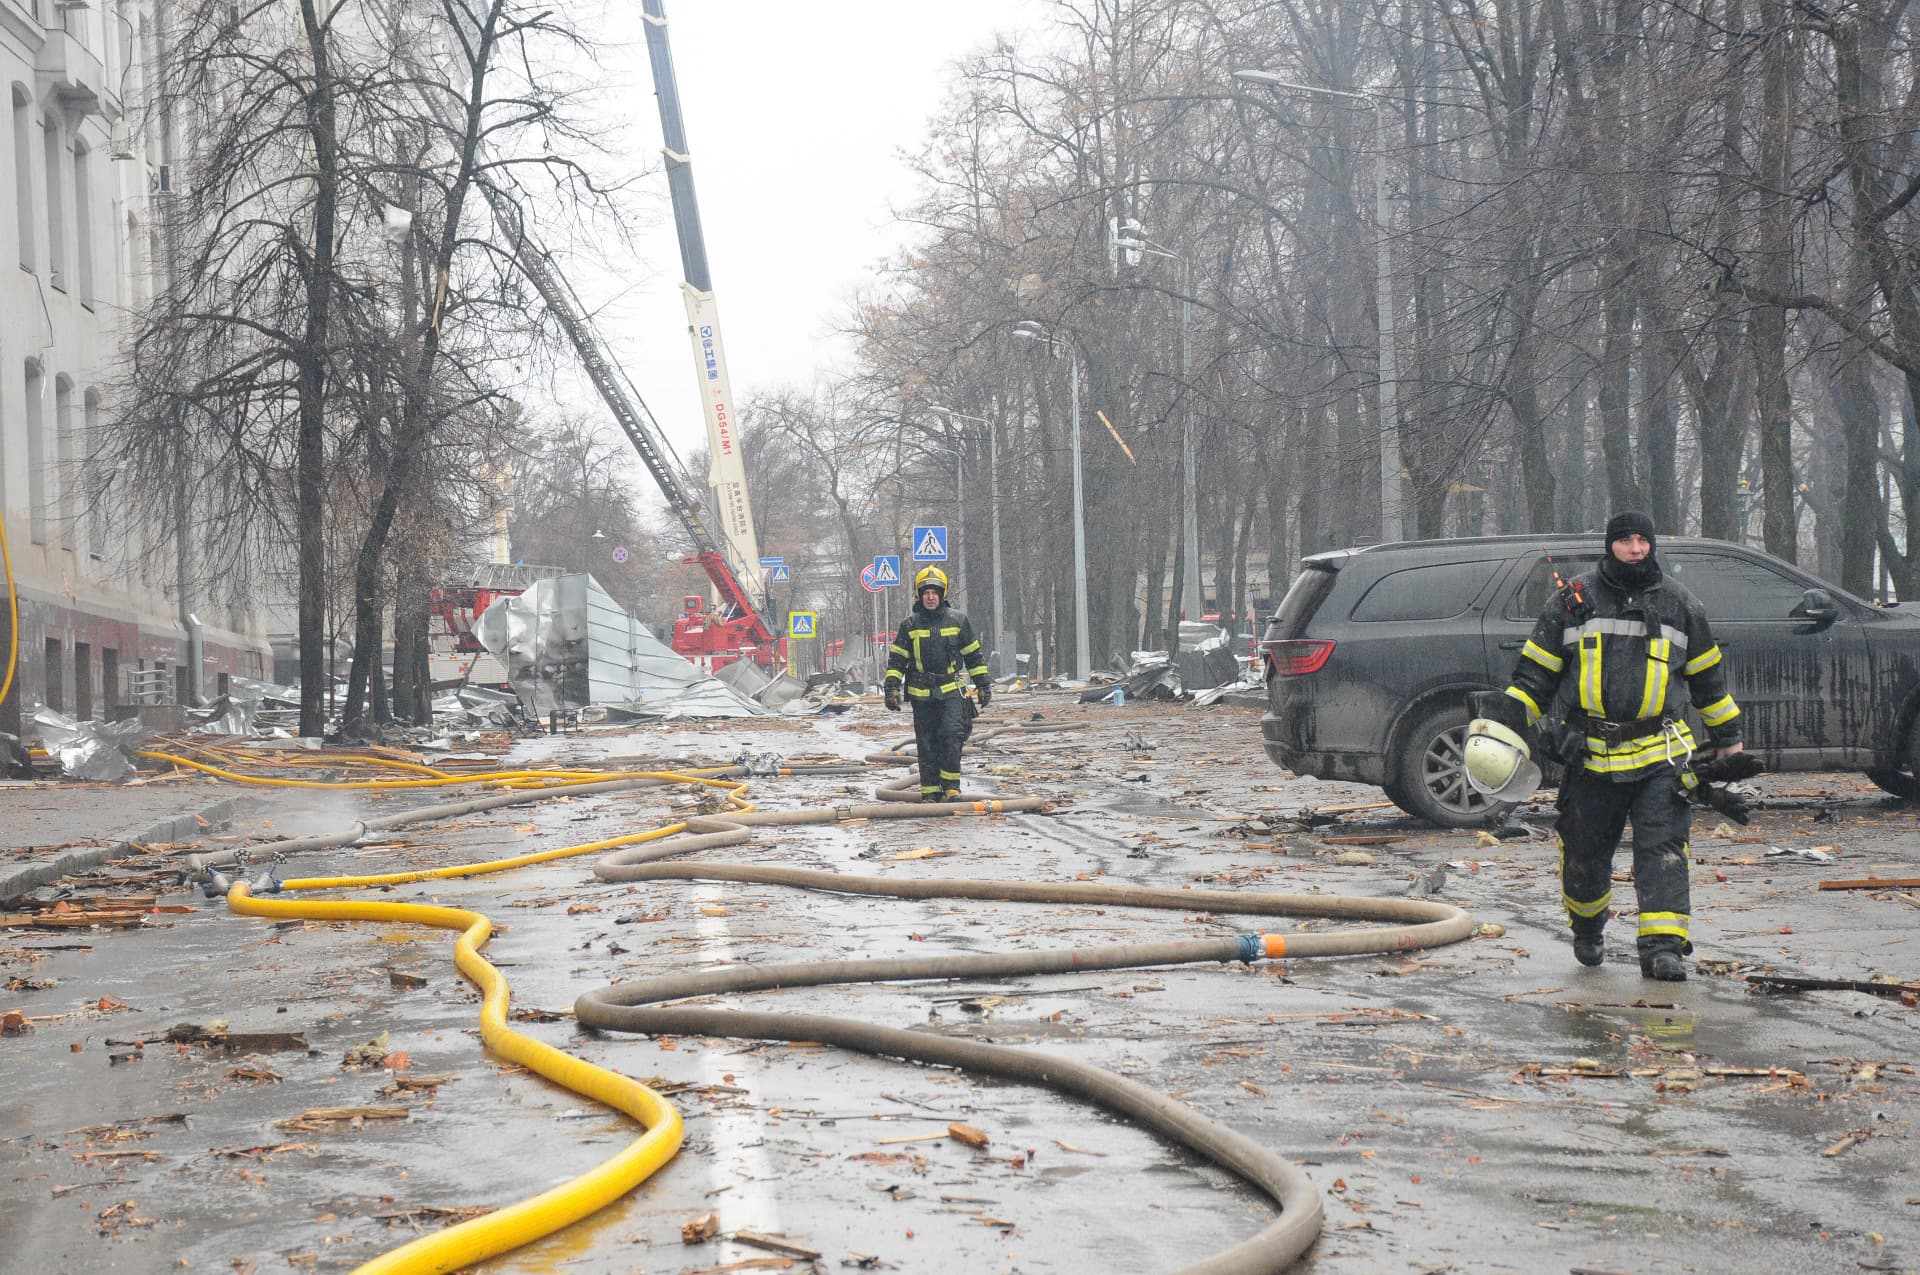  Rescue work after rocket attacks, in Kharkiv.